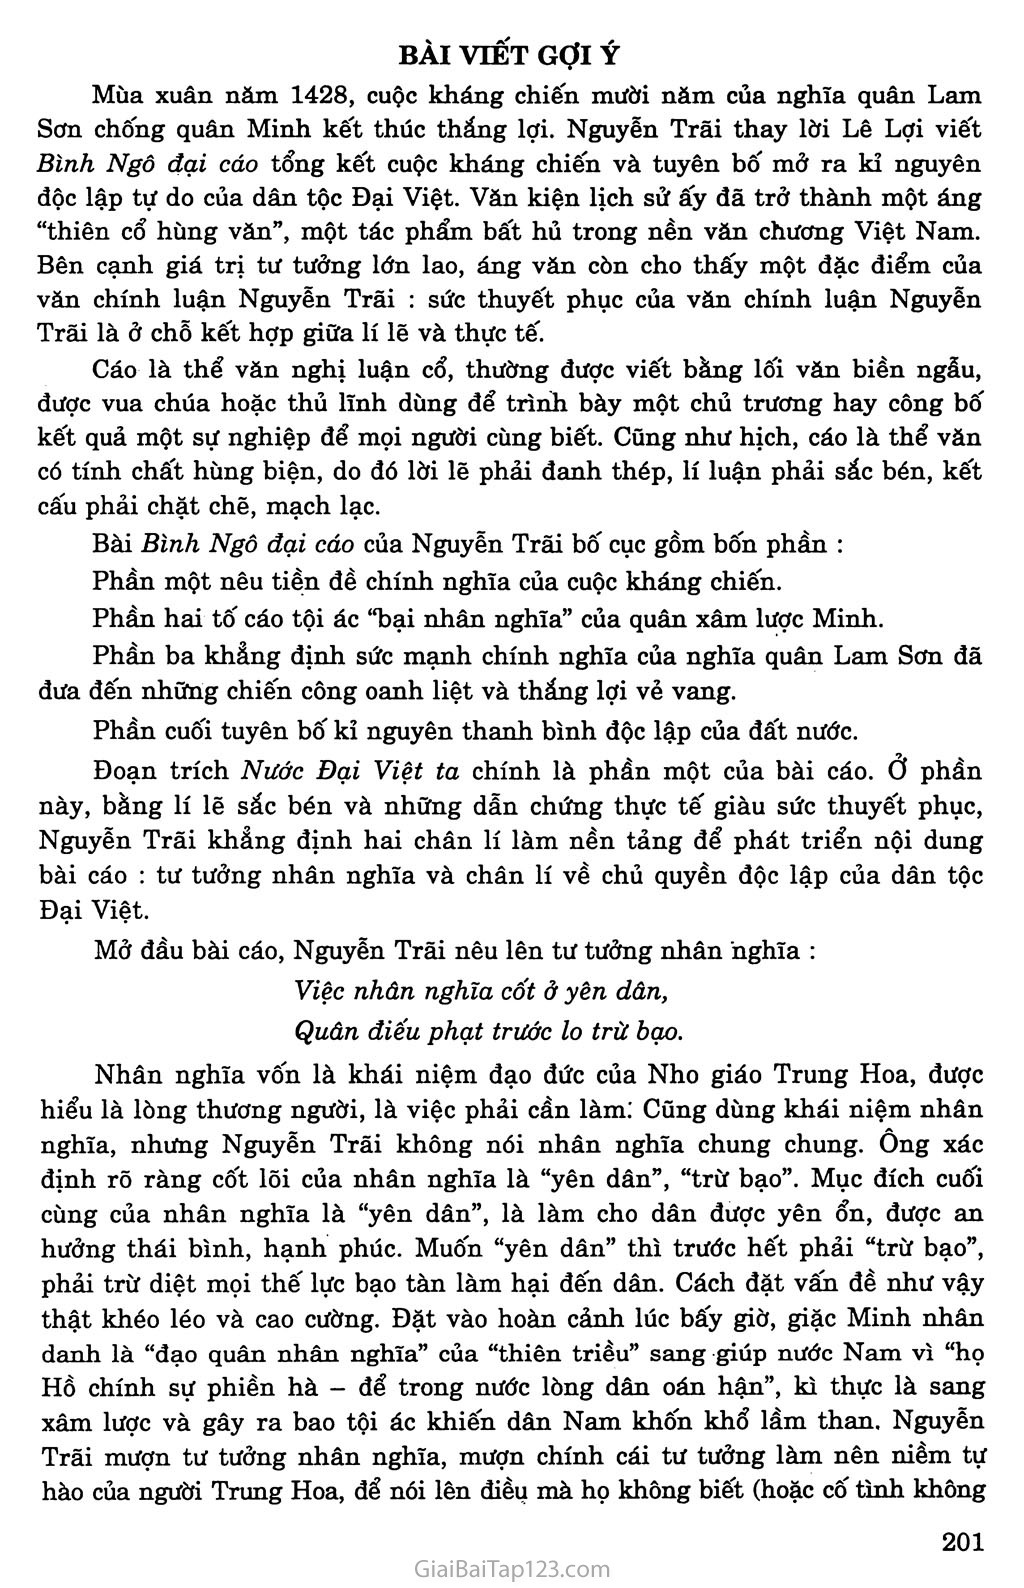 Nước Đại Việt ta (trích Bình Ngô đại cáo) trang 5